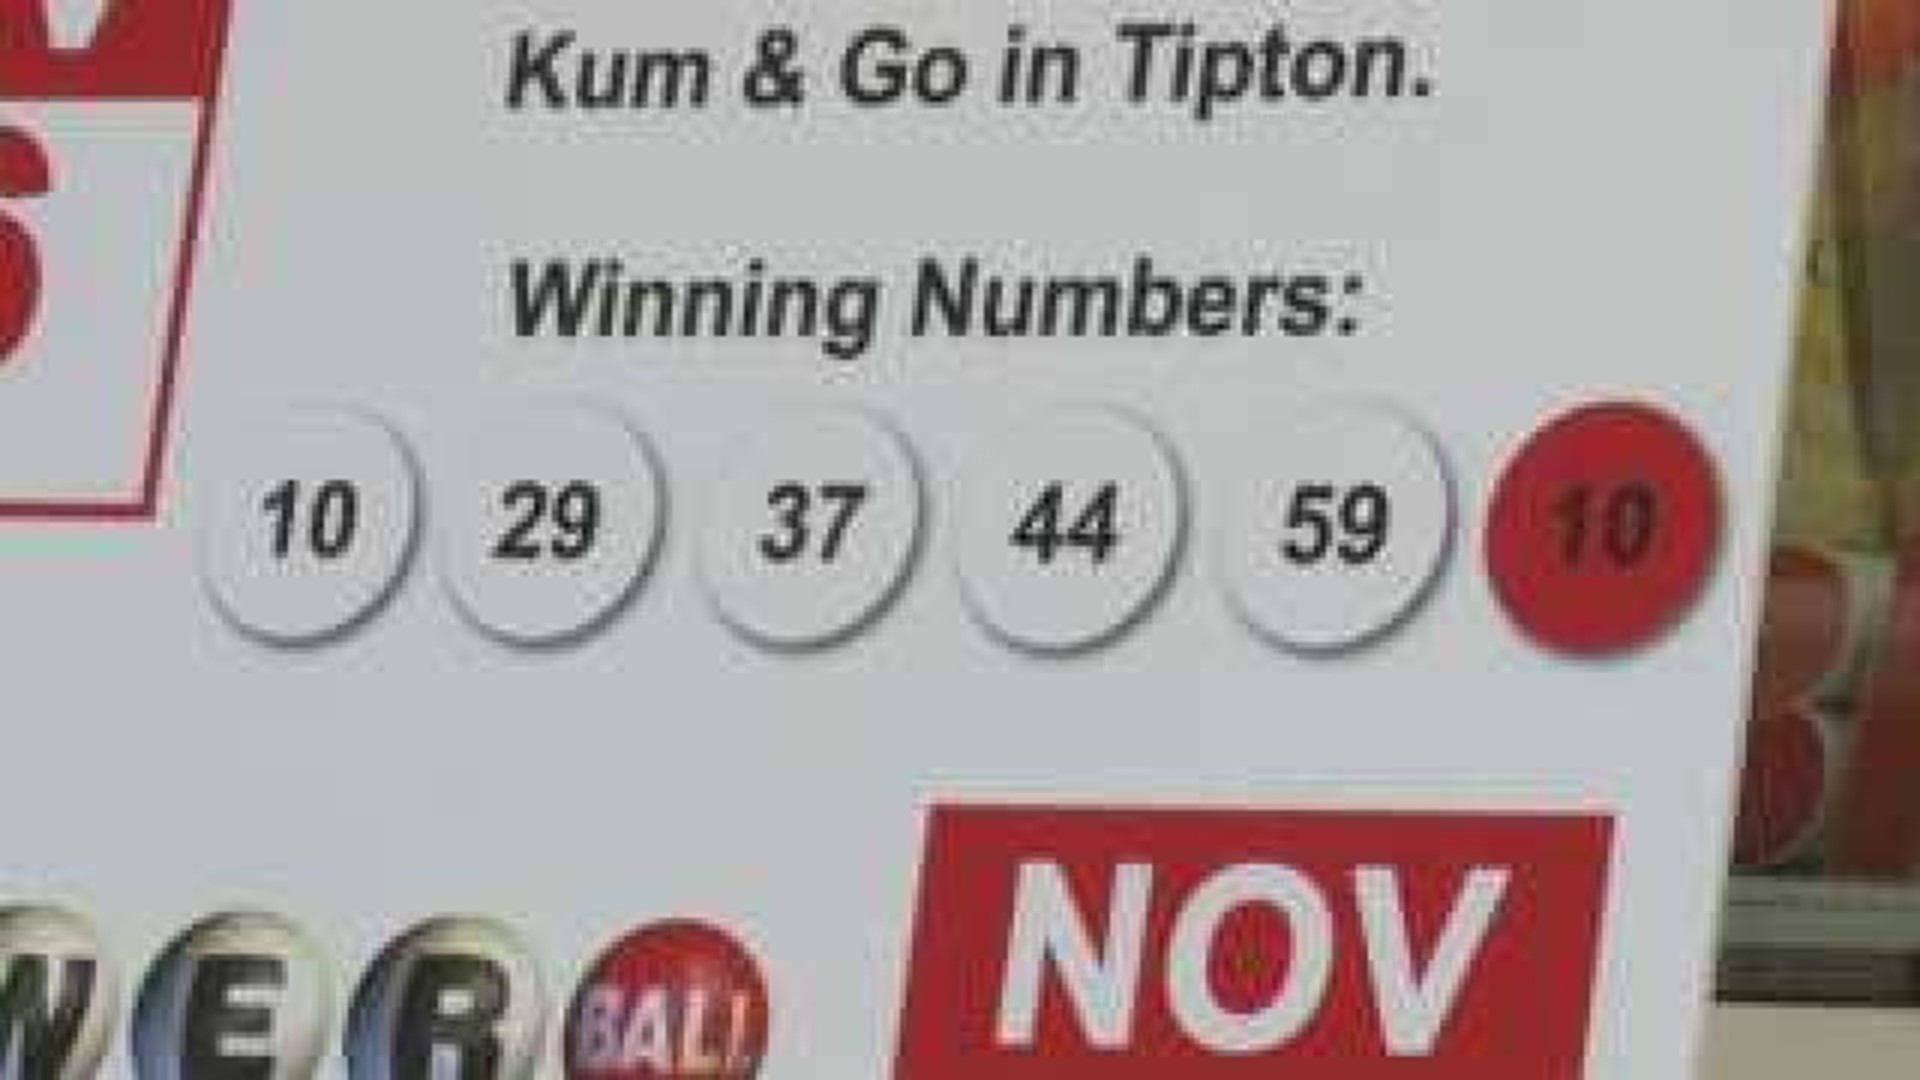 Tipton, Iowa, awaits million-dollar Powerball winner